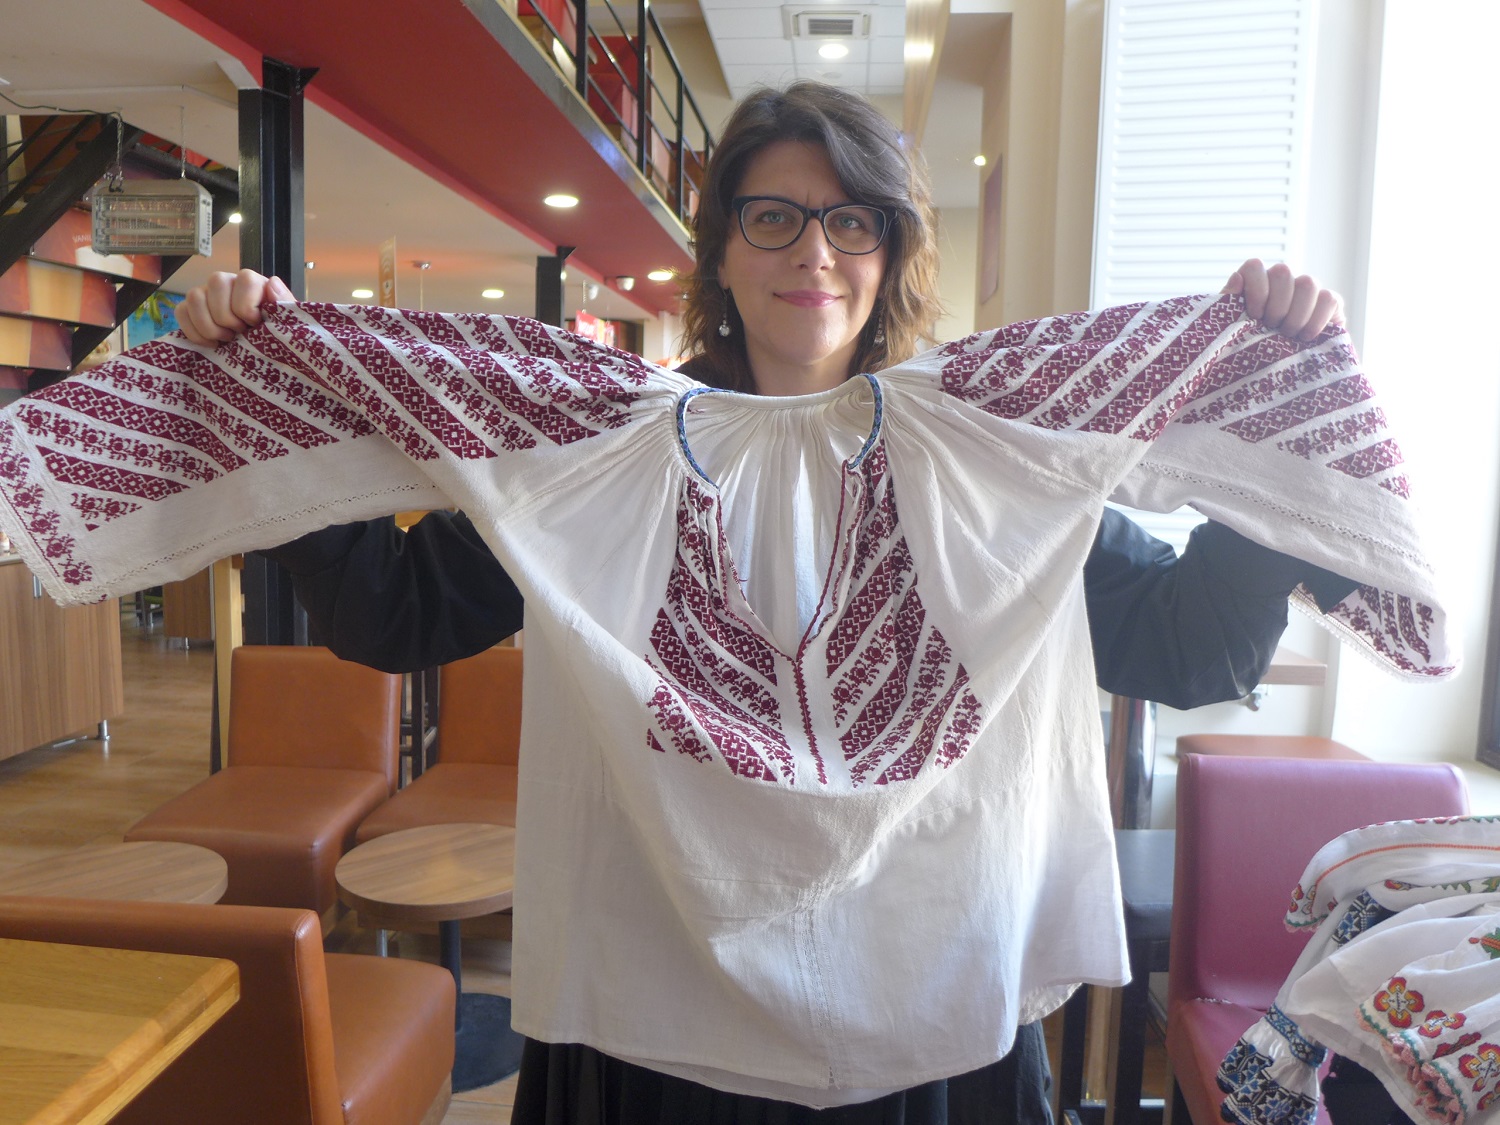 Andreea TANASESCU déploie une blouse roumaine : lorsqu’on lève les bras, on dirait des ailes.